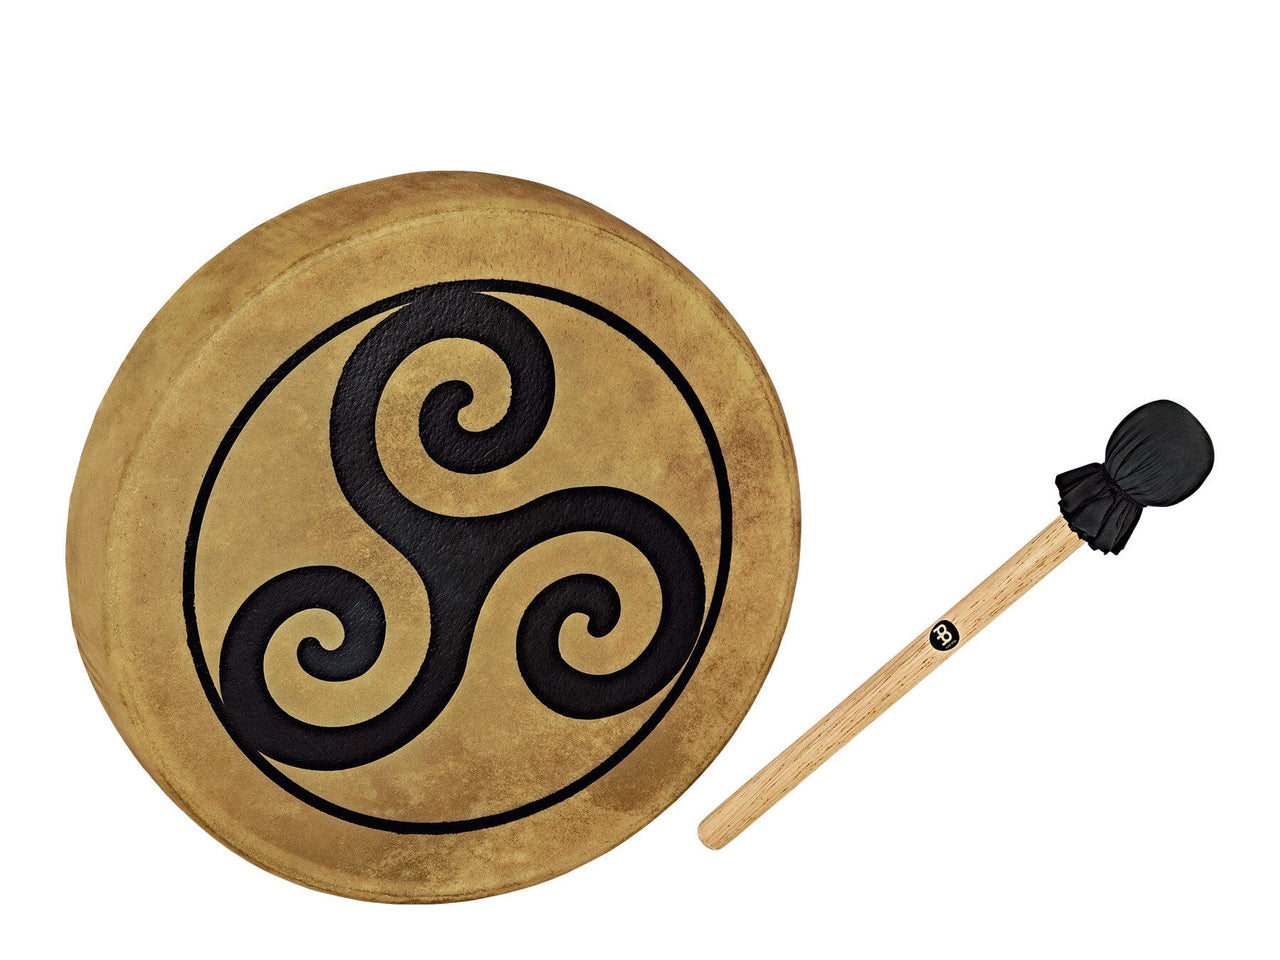 MEINL Sonic Energy Native American-Style Hoop Drum - 15" / 38 cm Triskele (HOD15-TR) Hand Drums Meinl 